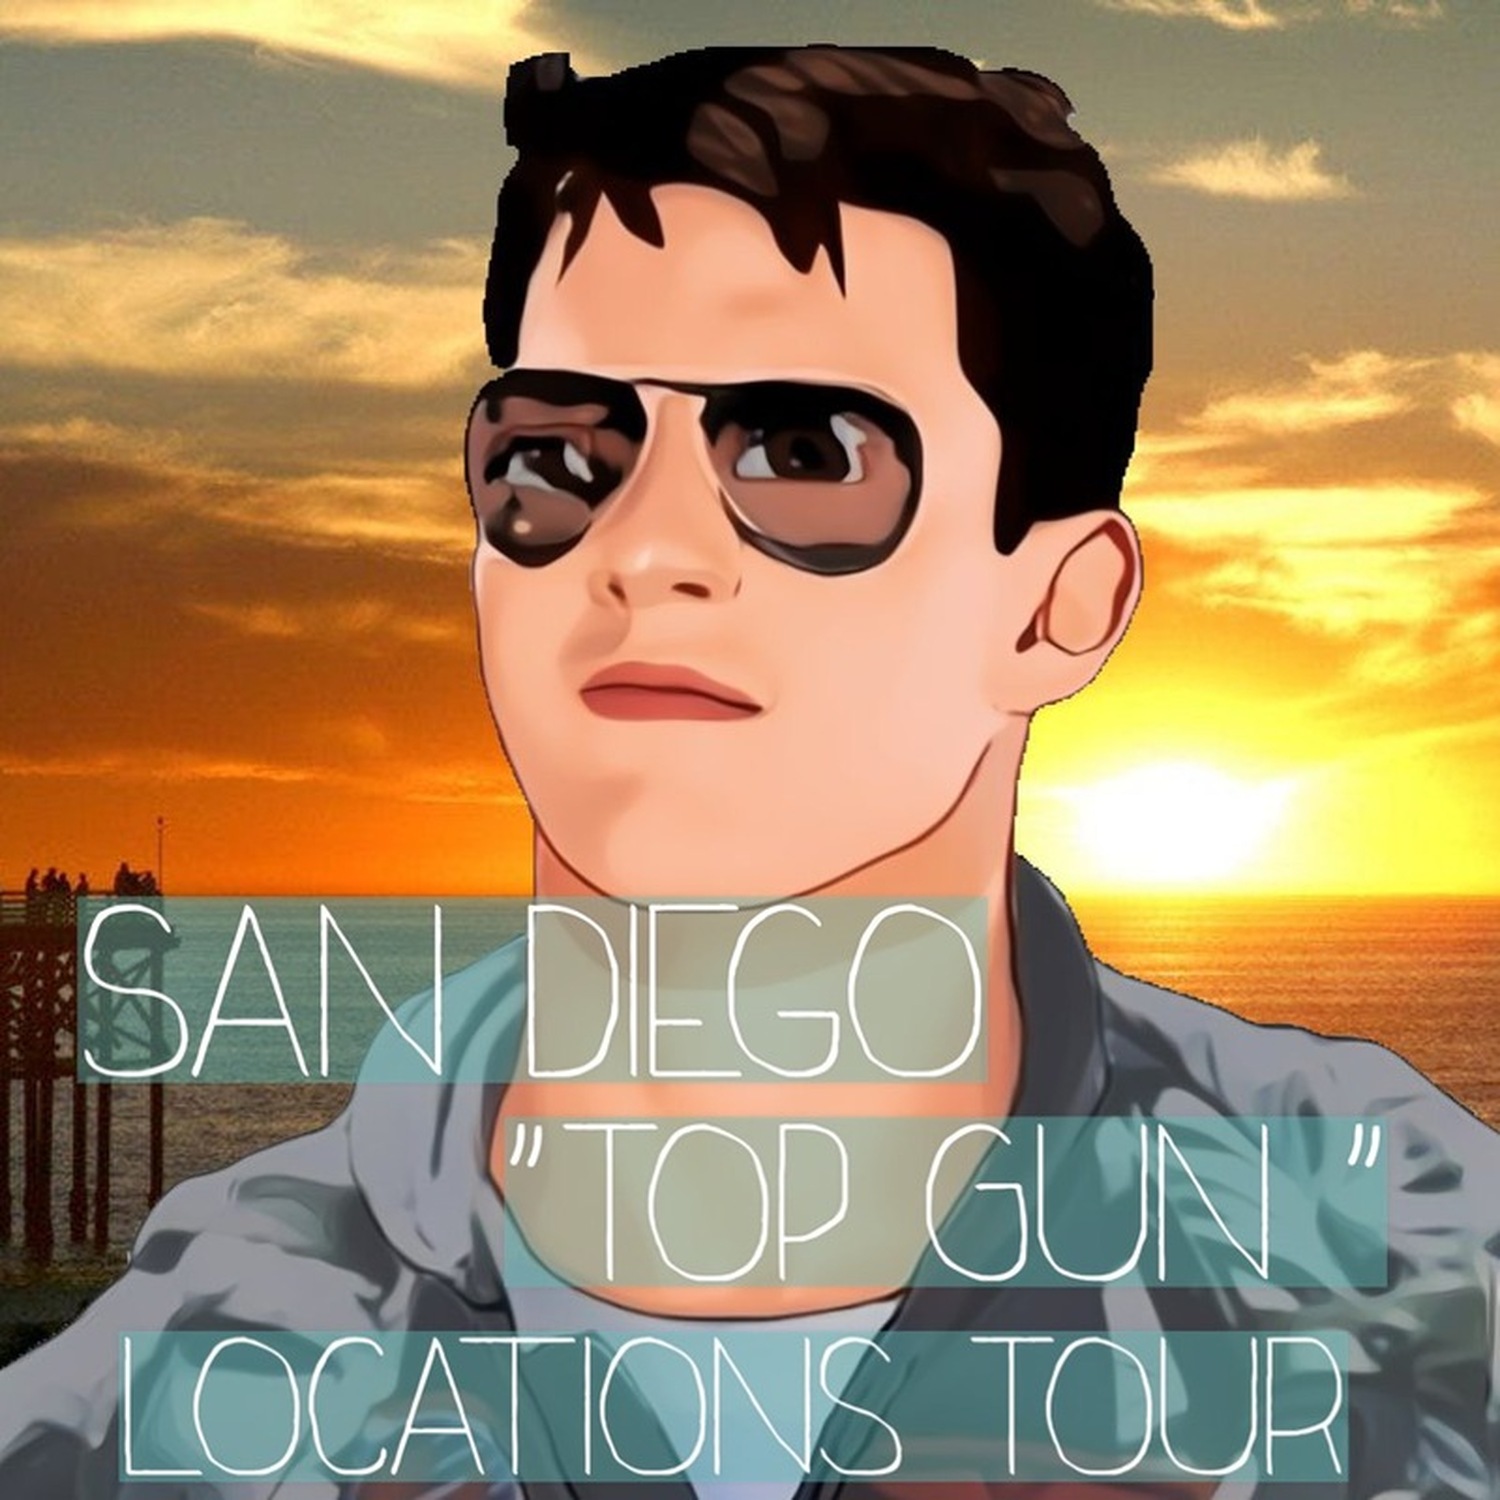 トム・クルーズを追いかけて、サンディエゴ「トップガン」ロケ地巡礼ツアーへ